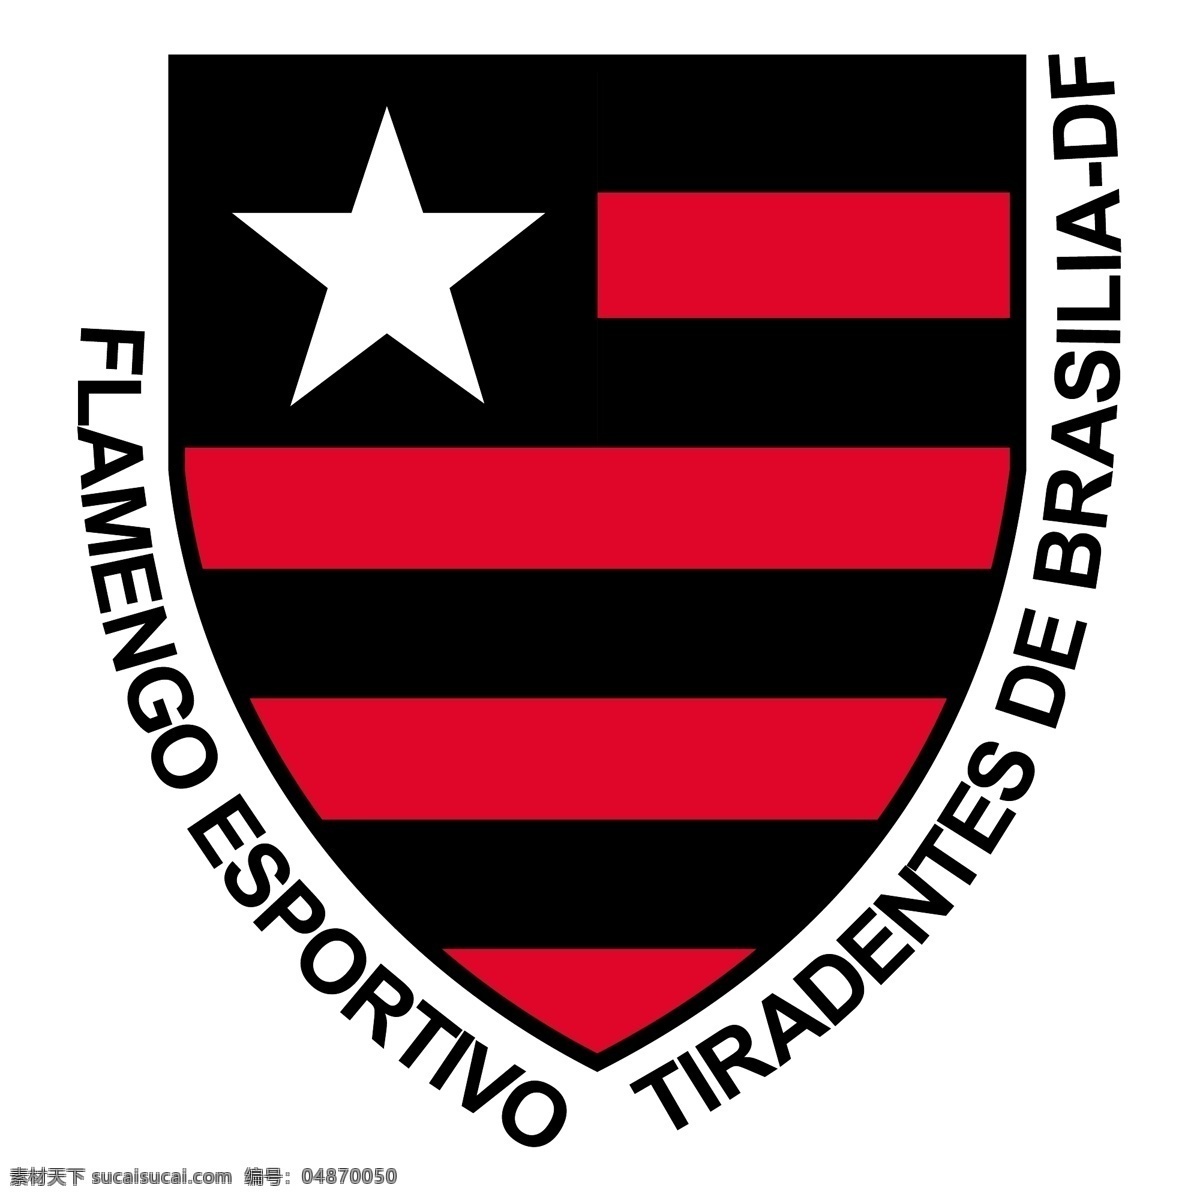 弗拉门戈 艾斯 波 迪 渥 蒂 拉登 特斯 de 巴西利亚 东风 免费 标志 df psd源文件 logo设计